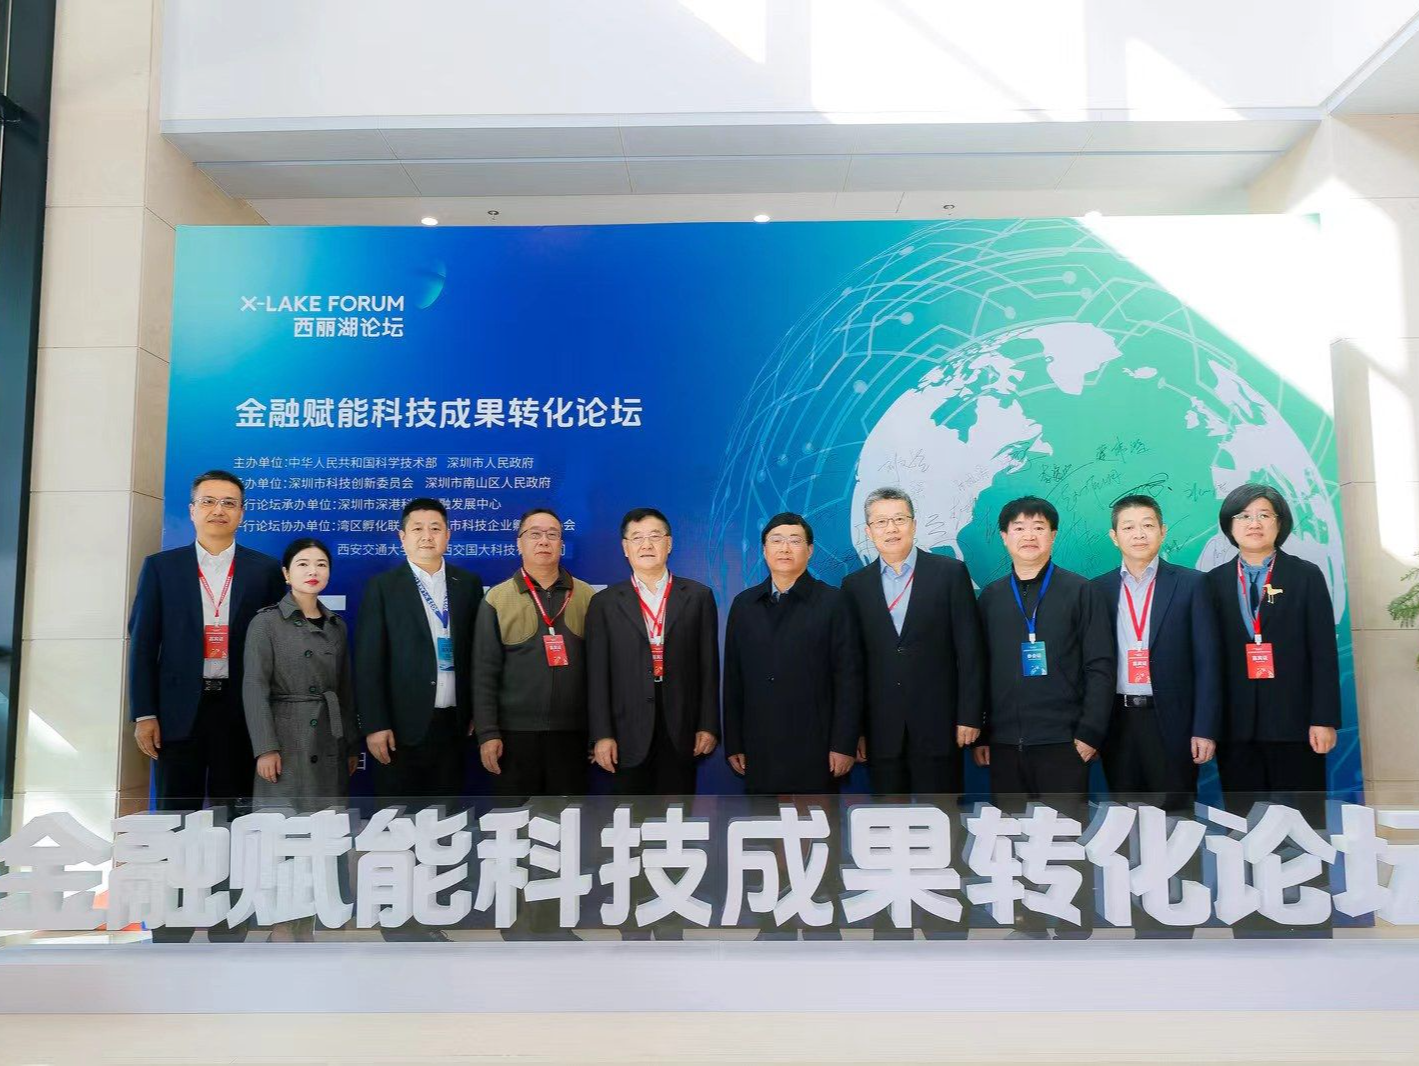 西安交大计划在深圳成立“粤港澳大湾区未来技术研究院”